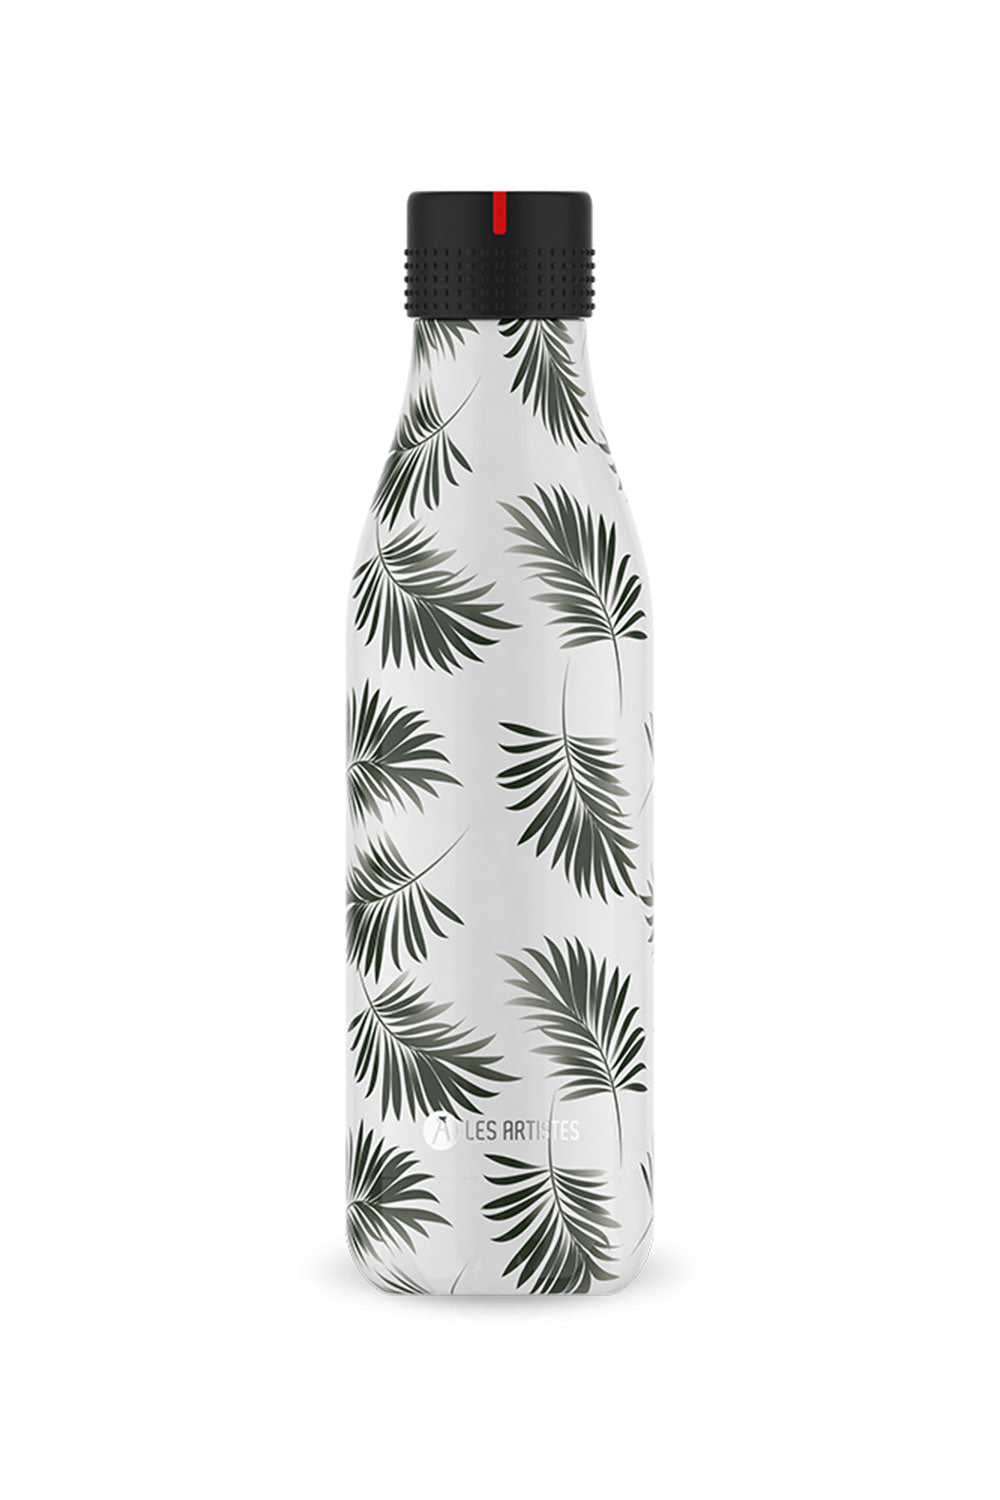 Seychelles Bril Bottle, 500ml - Maison7